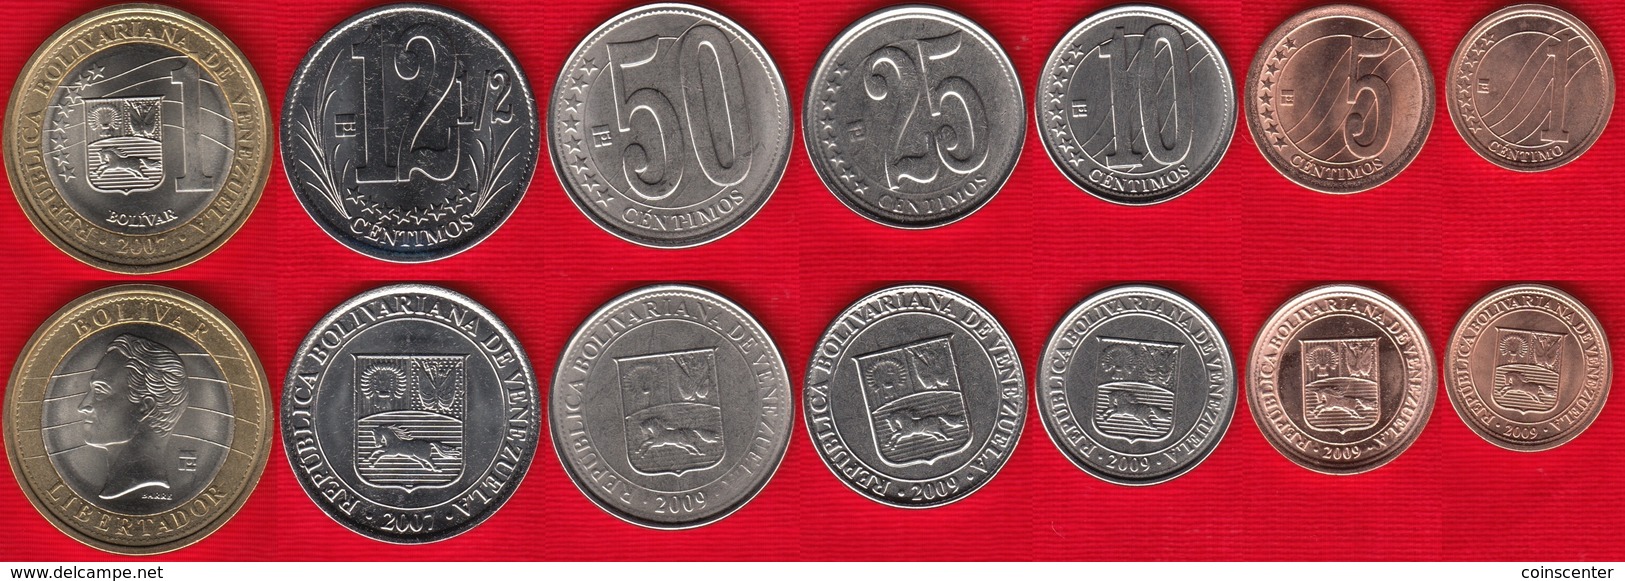 Venezuela Set Of 7 Coins: 1 Centimo - 1000 Bolivar 2007-2012 UNC - Venezuela